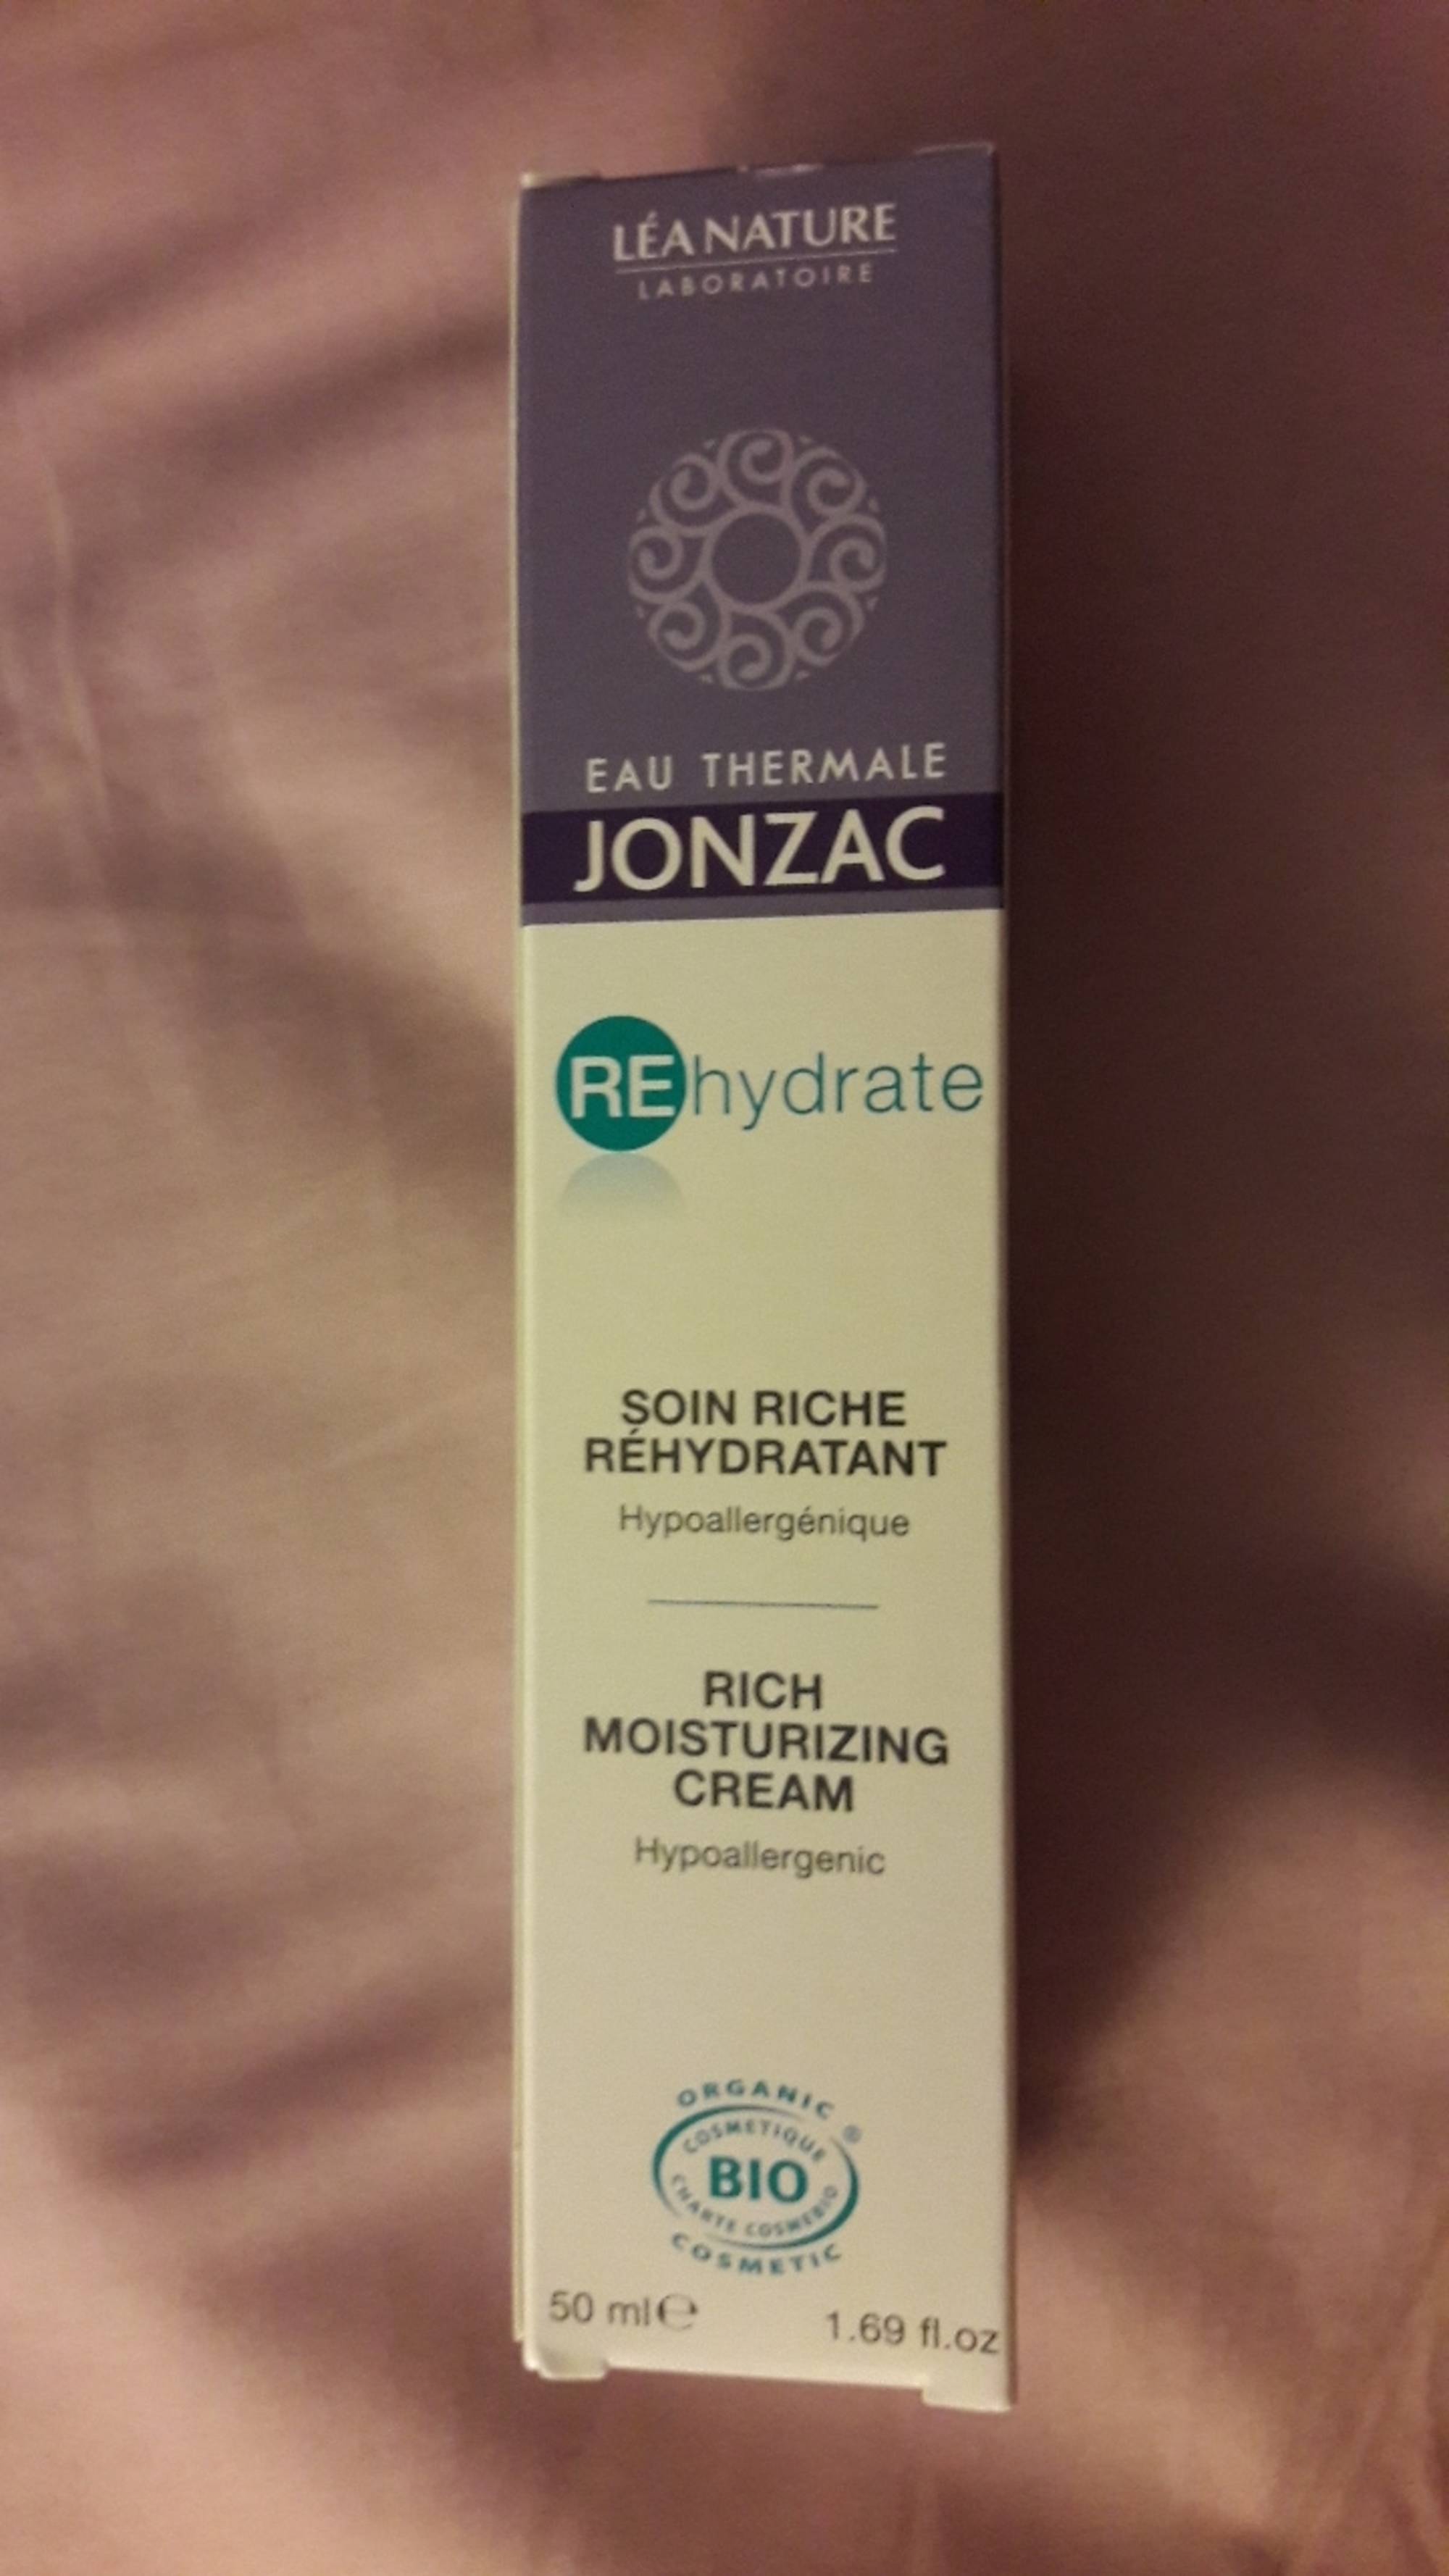 EAU THERMALE JONZAC - REhydrate - Soin riche réhydratant